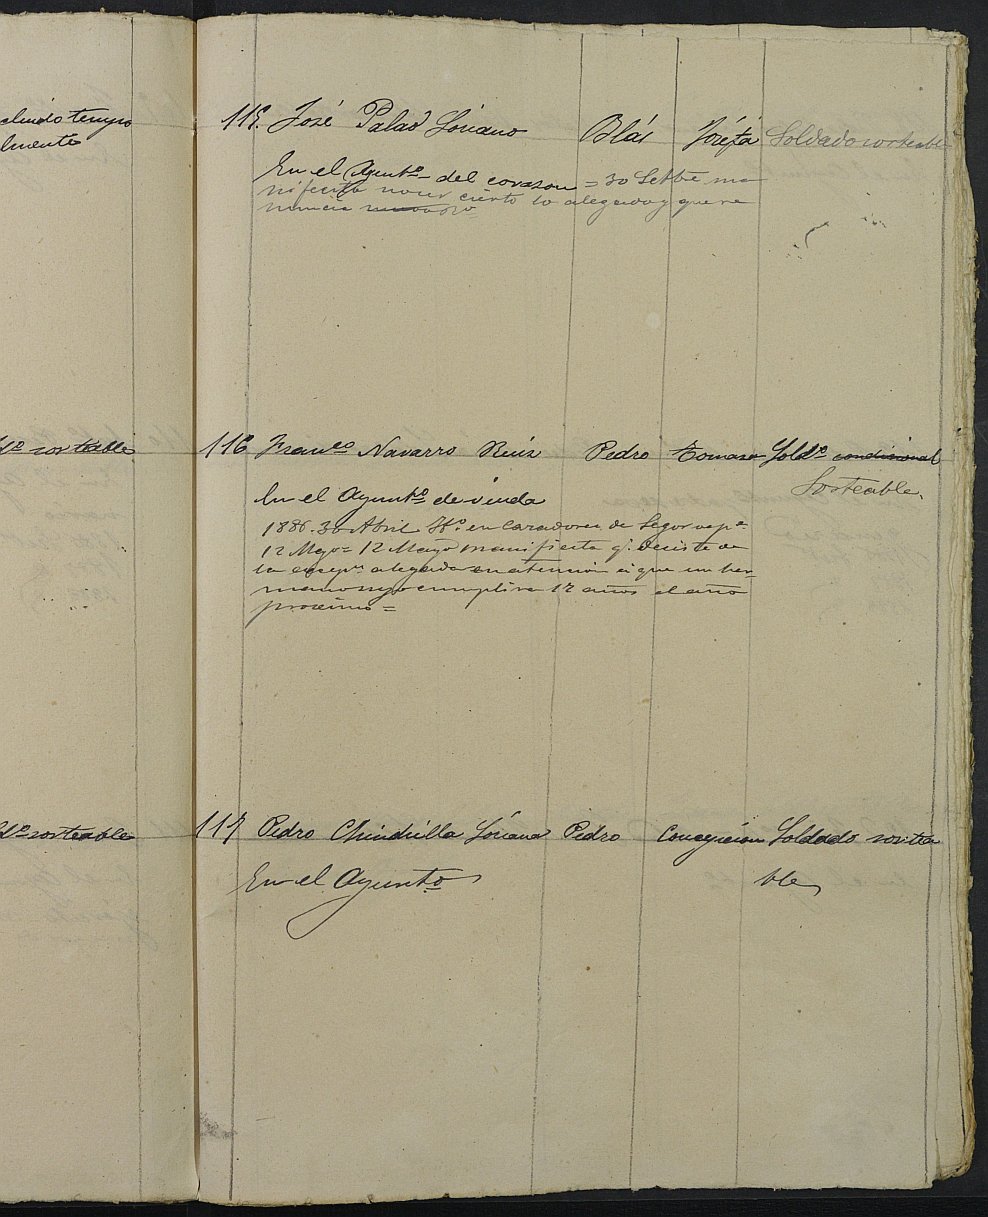 Relación de individuos declarados soldados e ingresados en Caja del 2ª reemplazo del Ayuntamiento de Yecla de 1885.